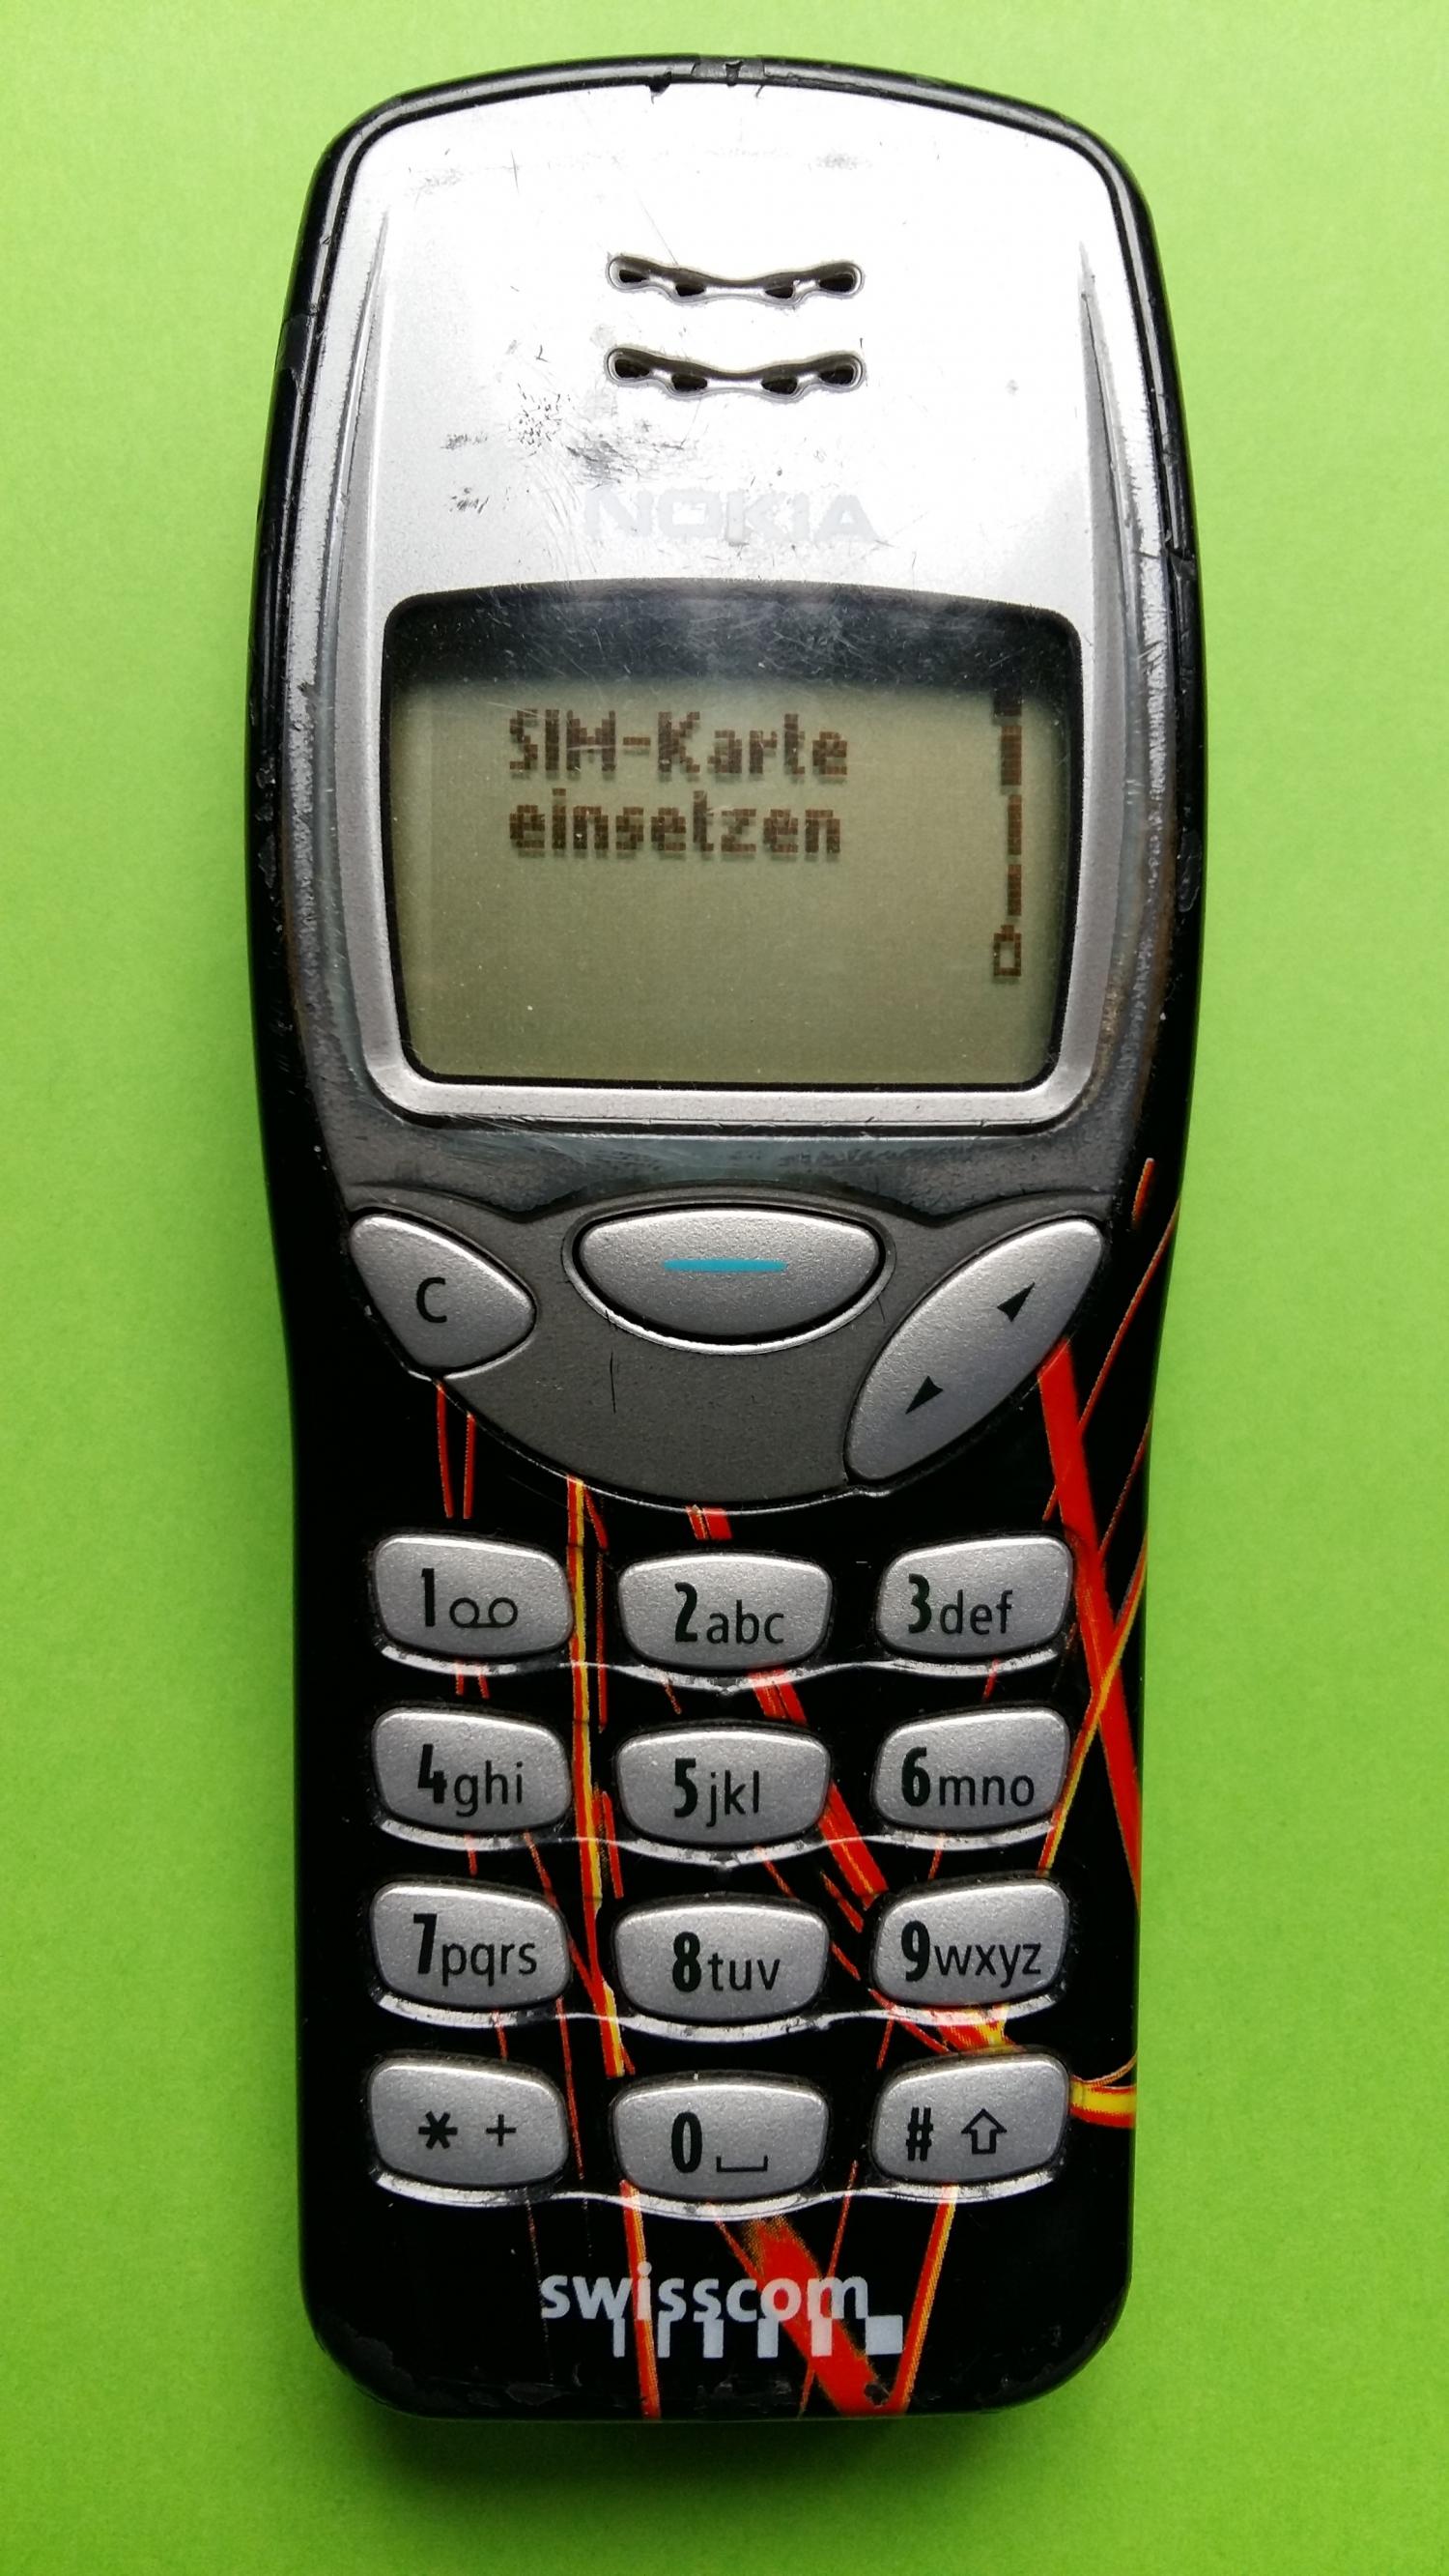 image-7303201-Nokia 3210 (19)1.jpg